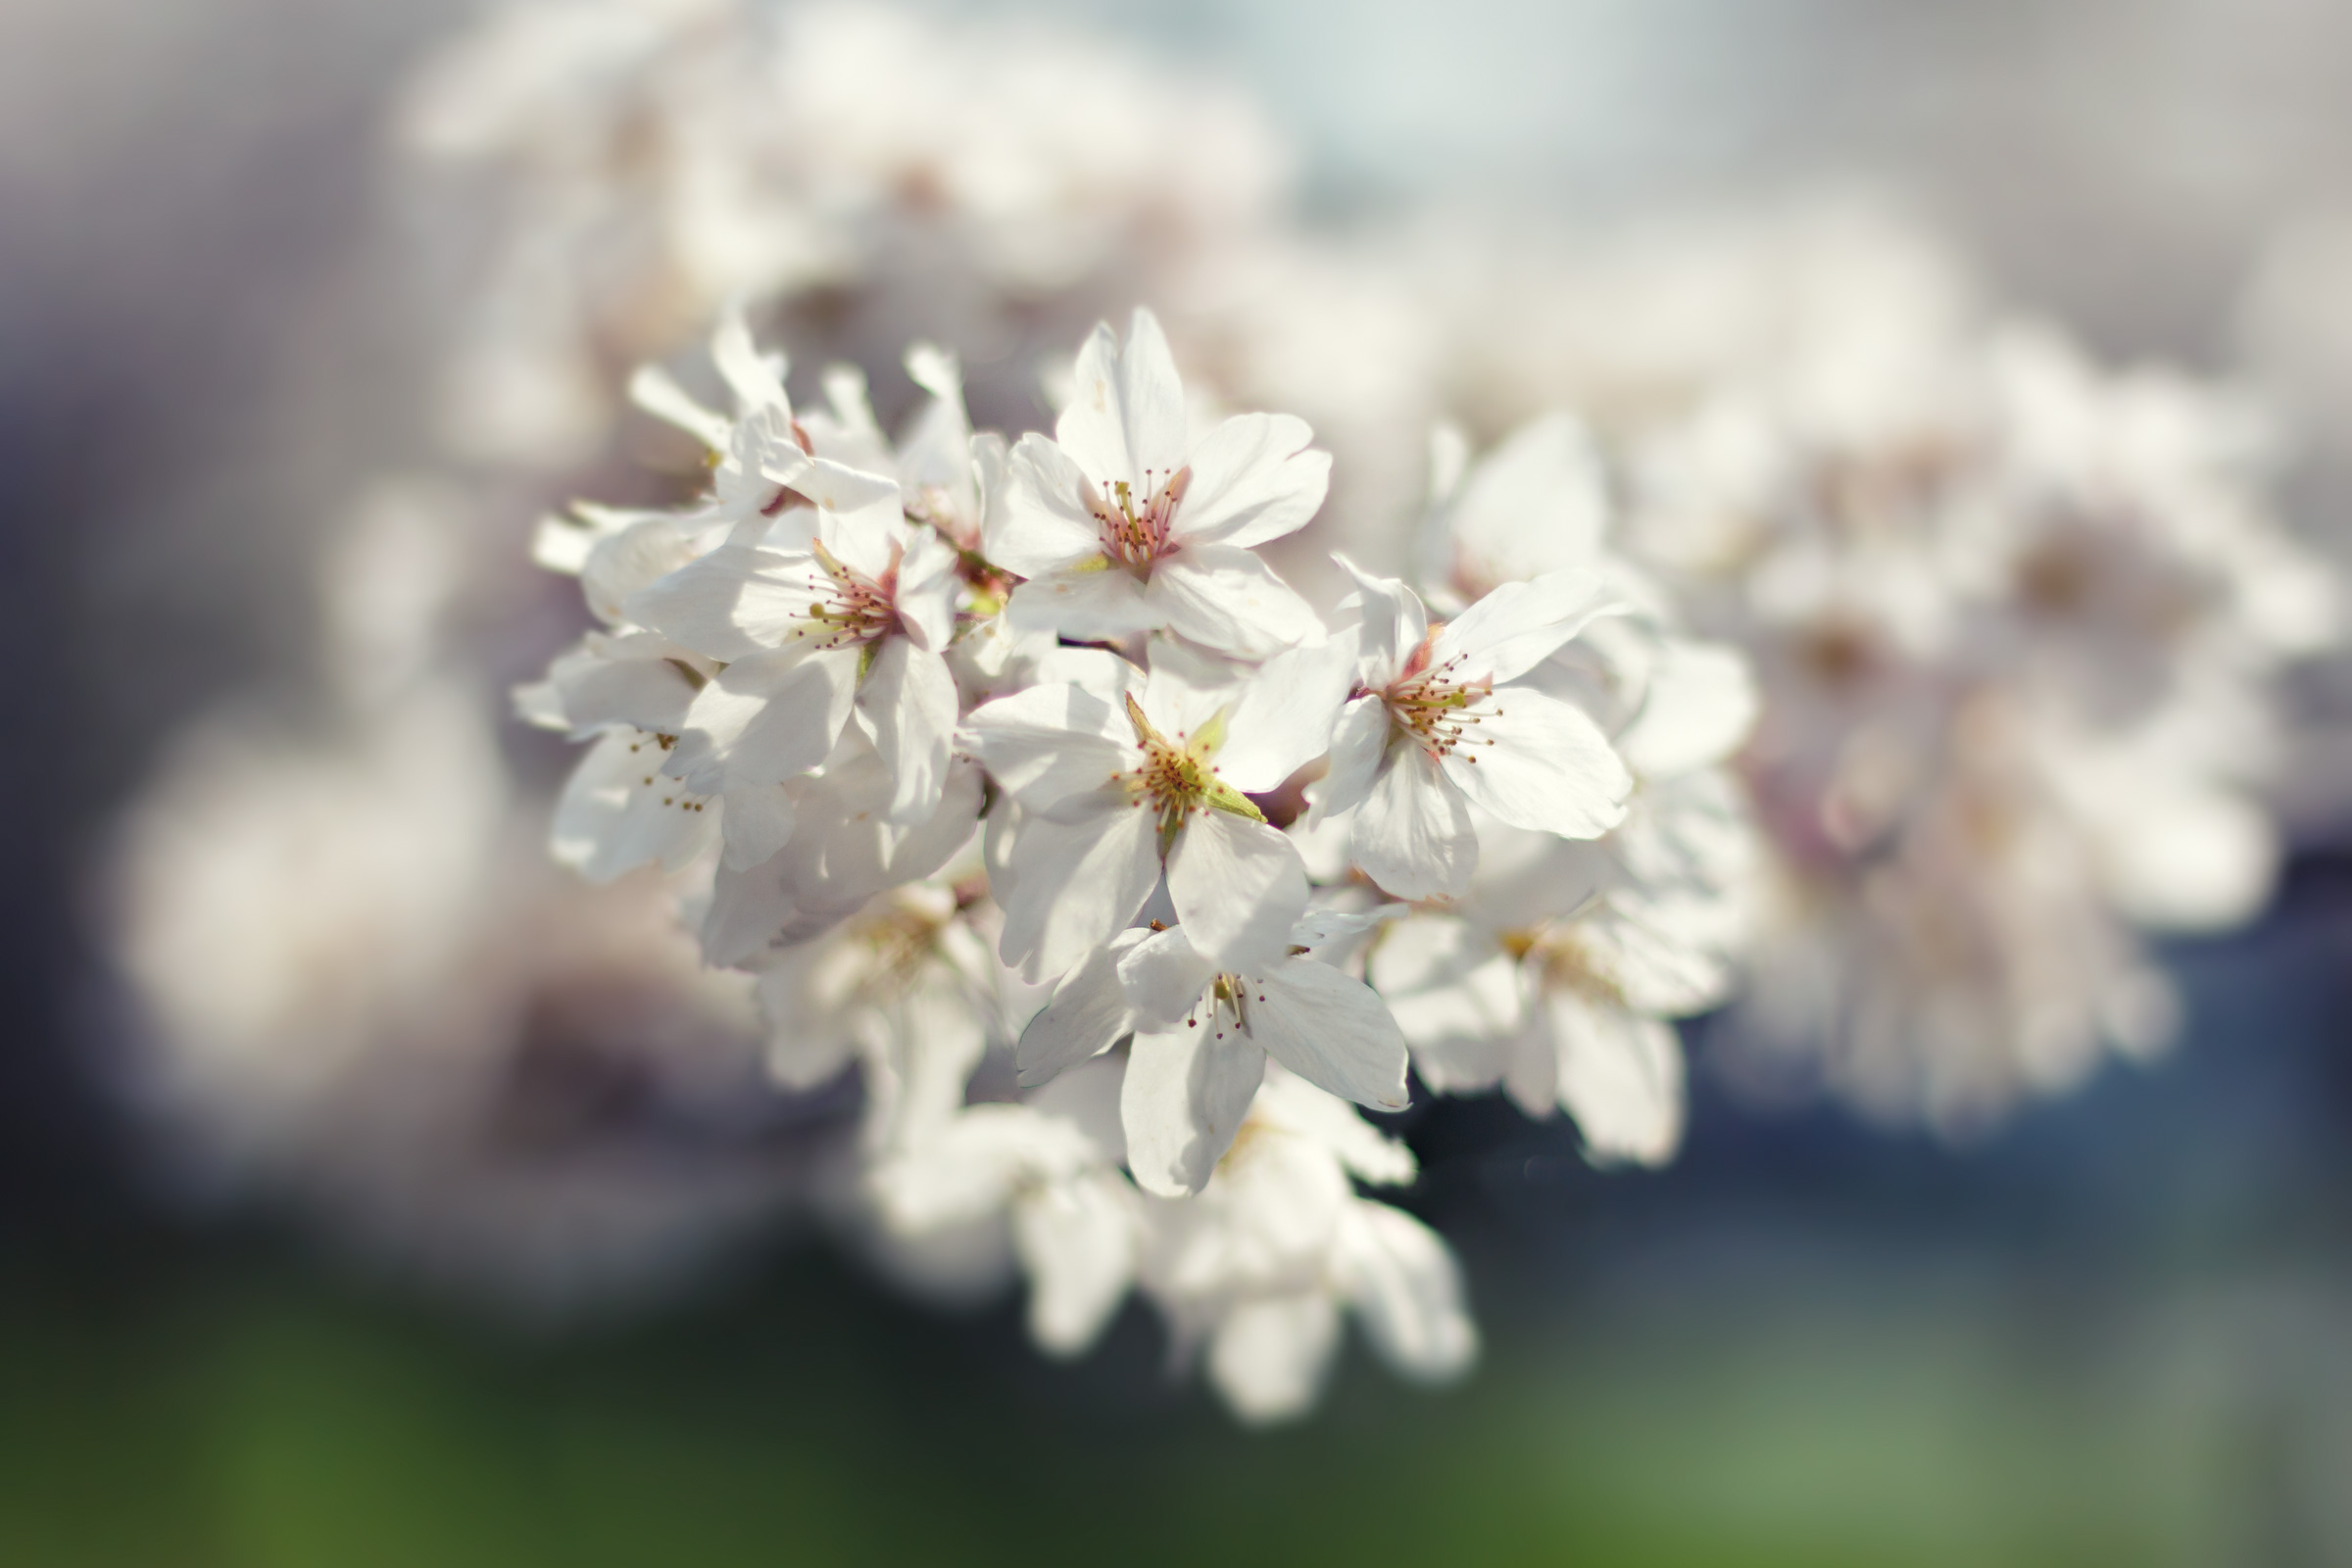 Spring blossoms